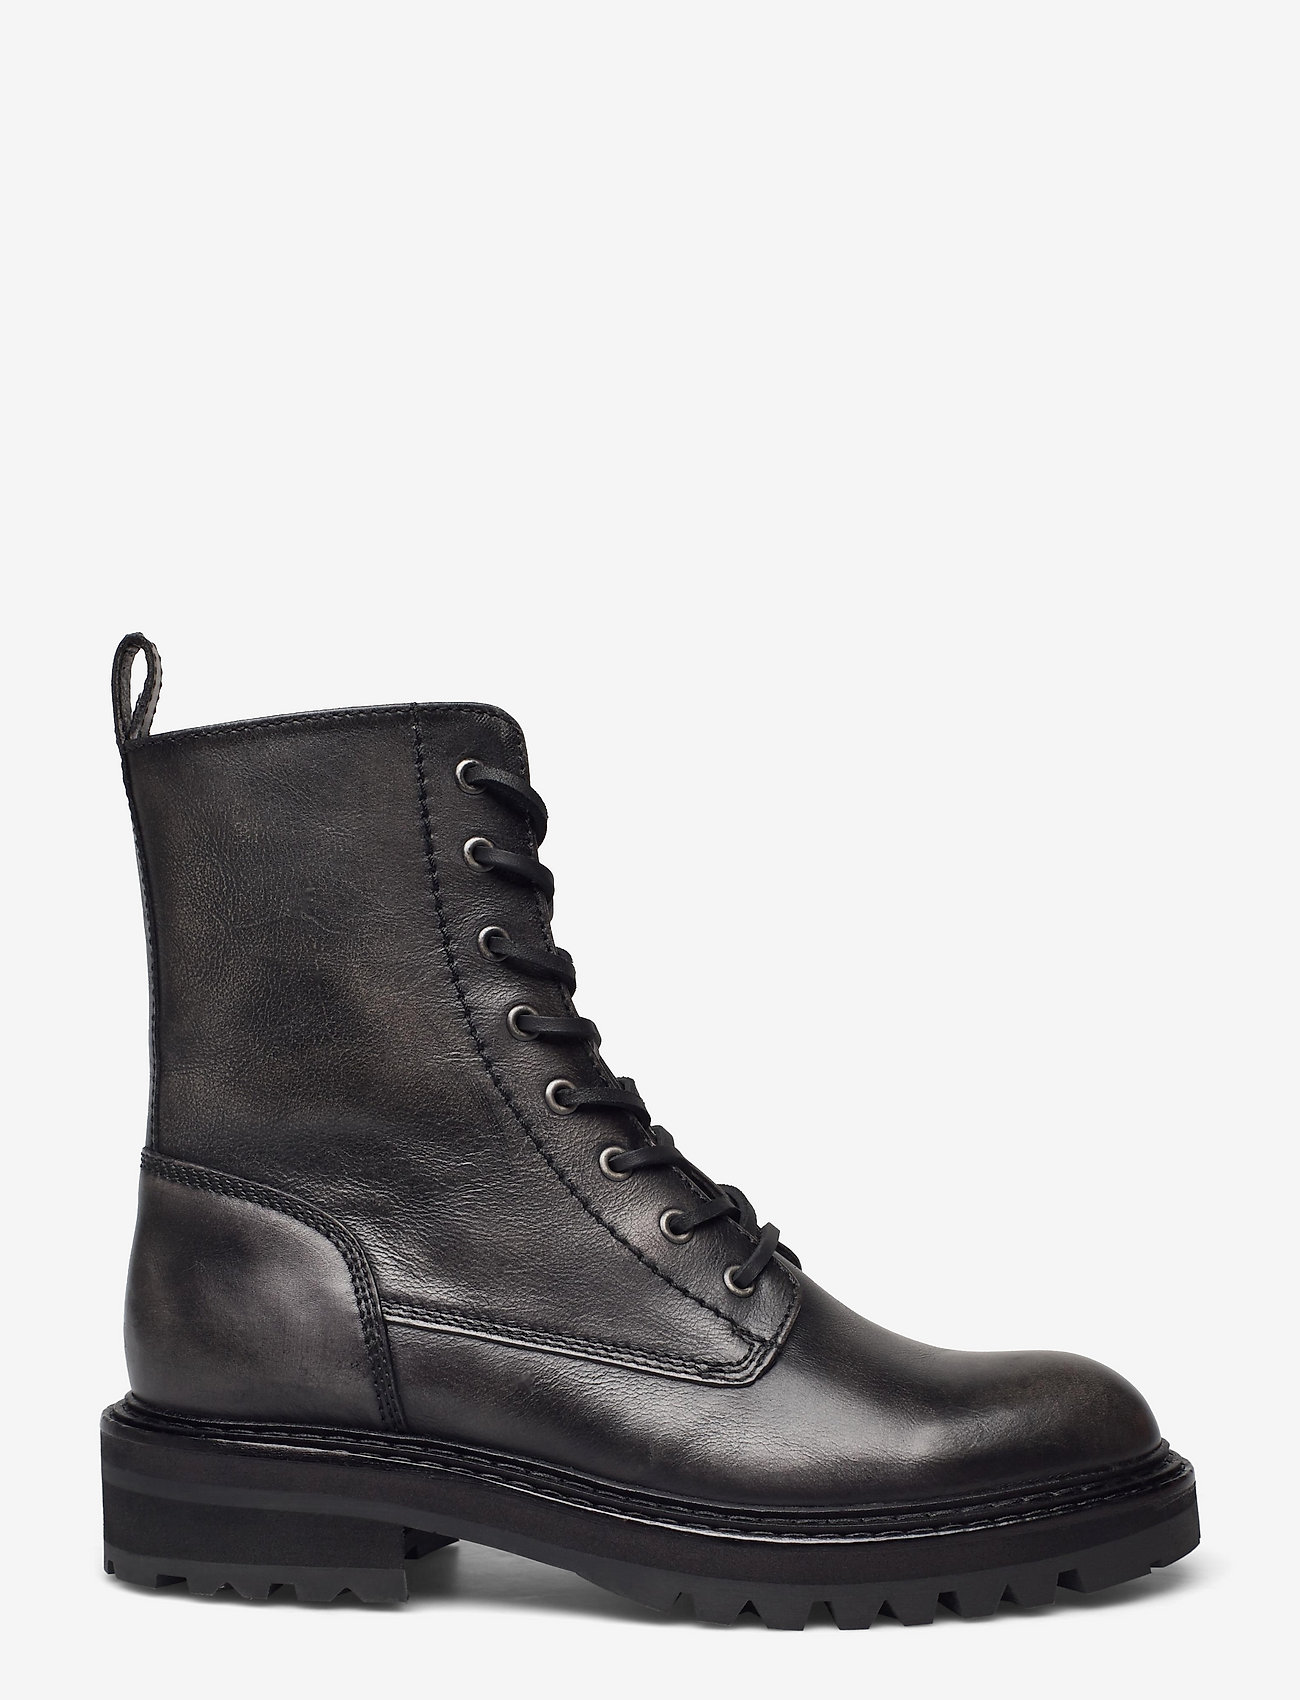 Billi Bi - Boots - laced boots - grey itaca calf 83 - 1